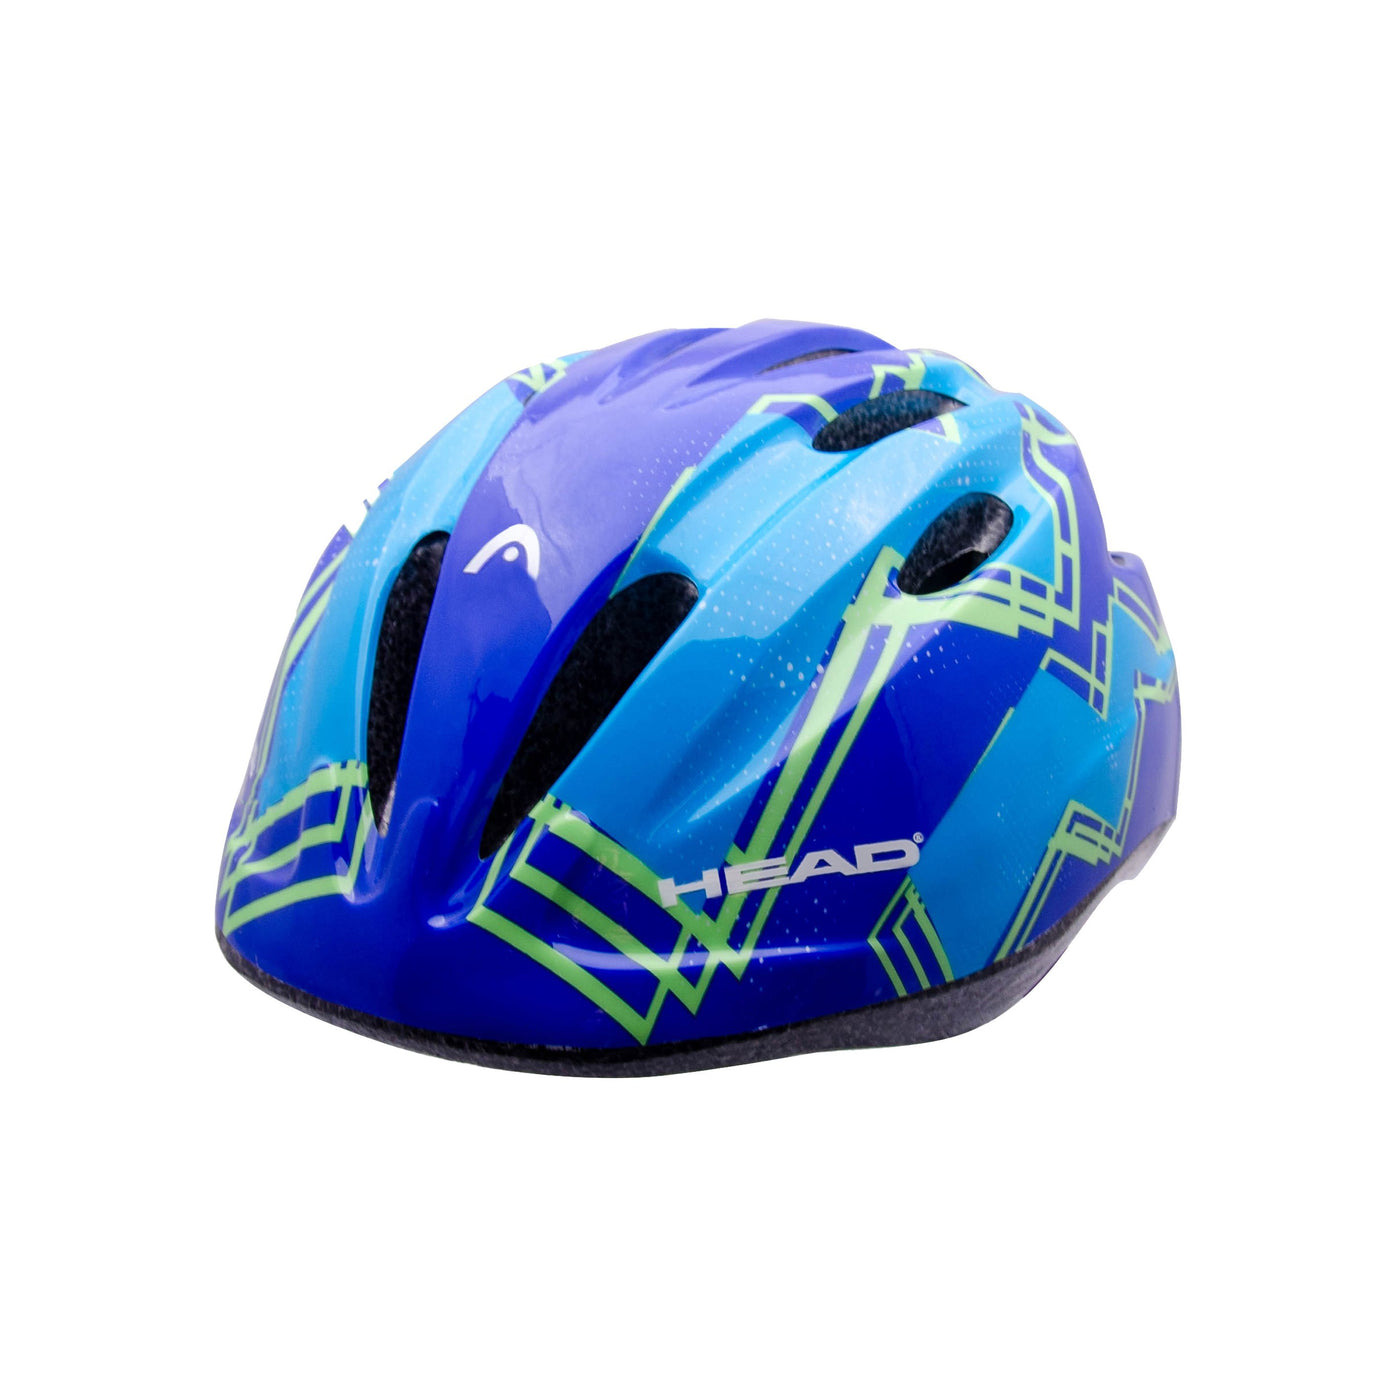 Willow HB6-3 Kids Helmet